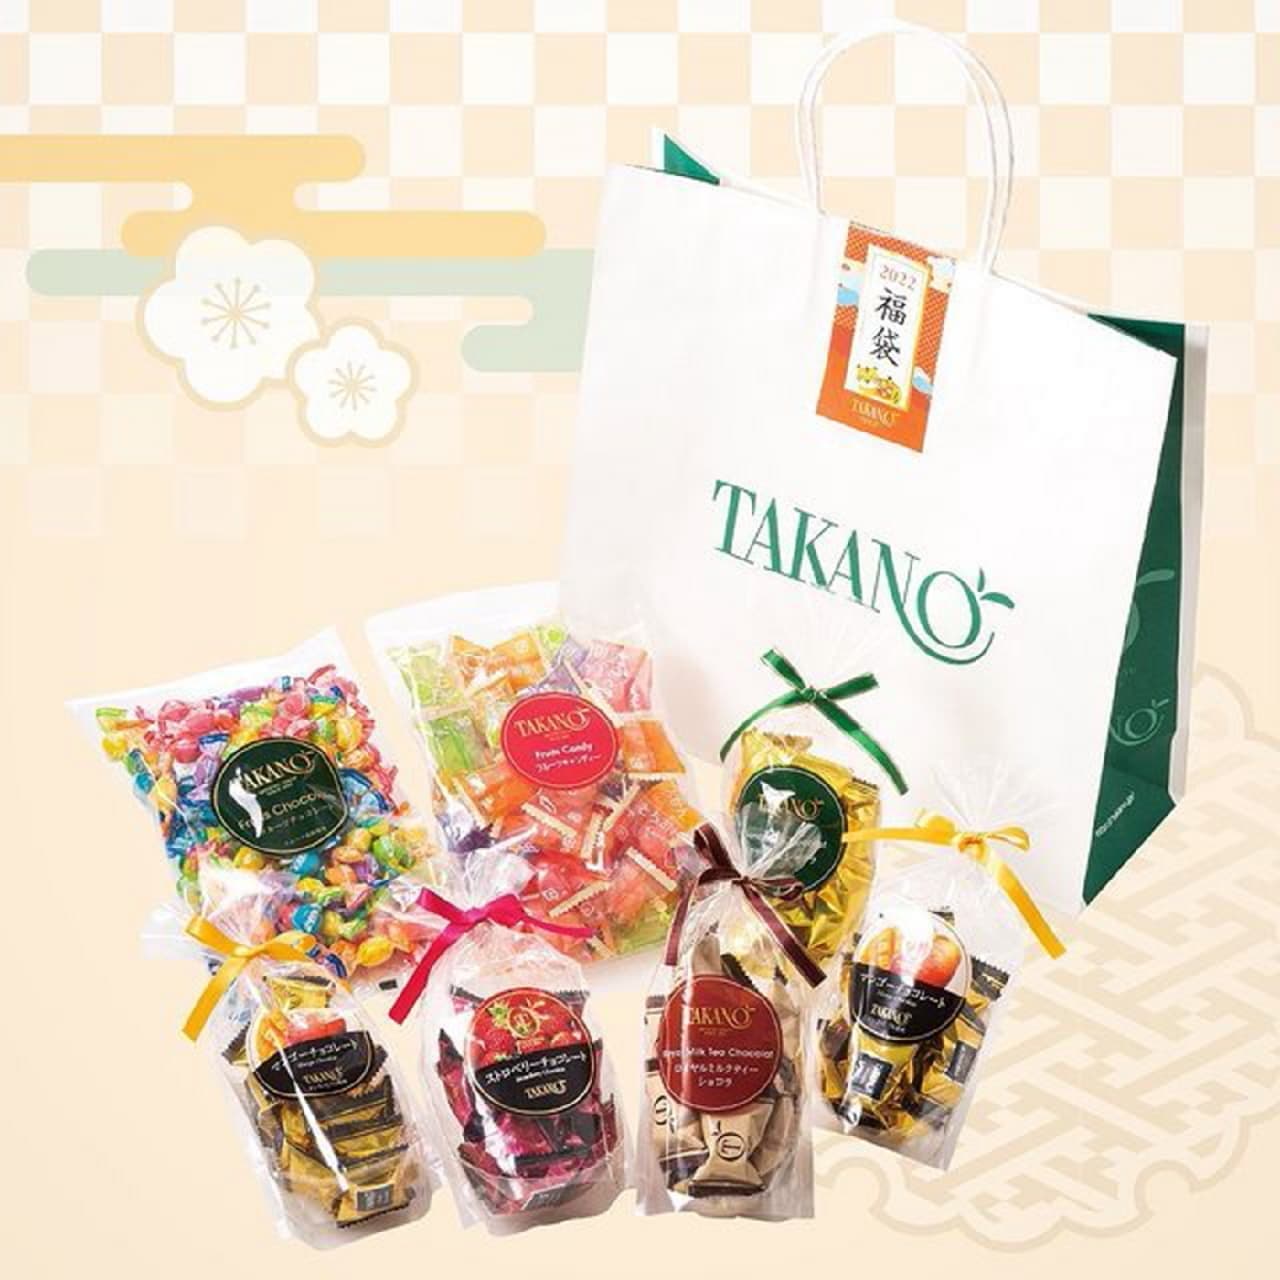 Shinjuku Takano New Year's holiday limited sweets